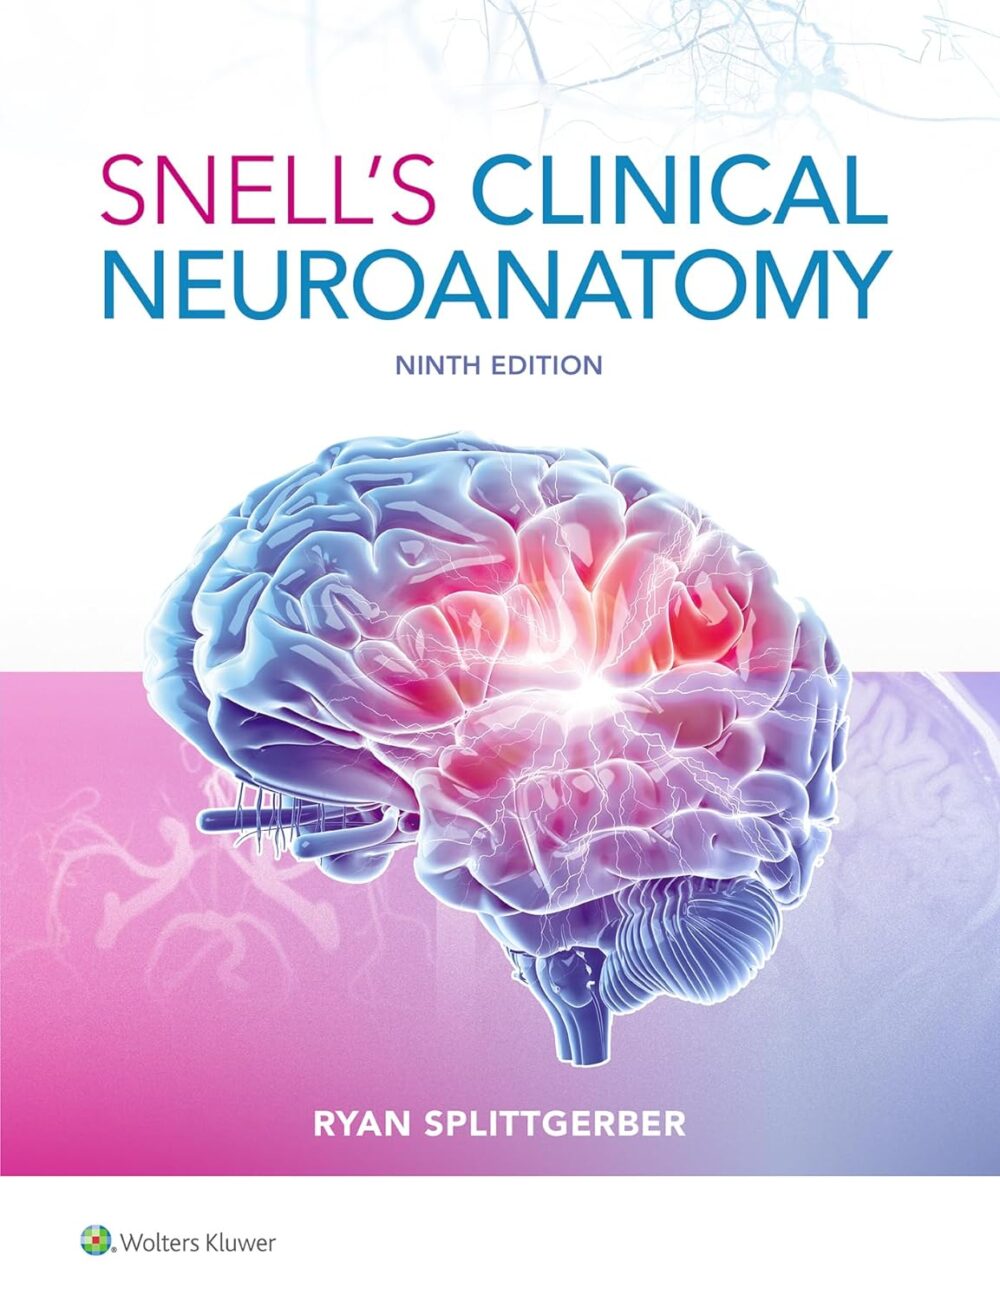 Neuroanatomía clínica de Snell novena edición 9ª ed.